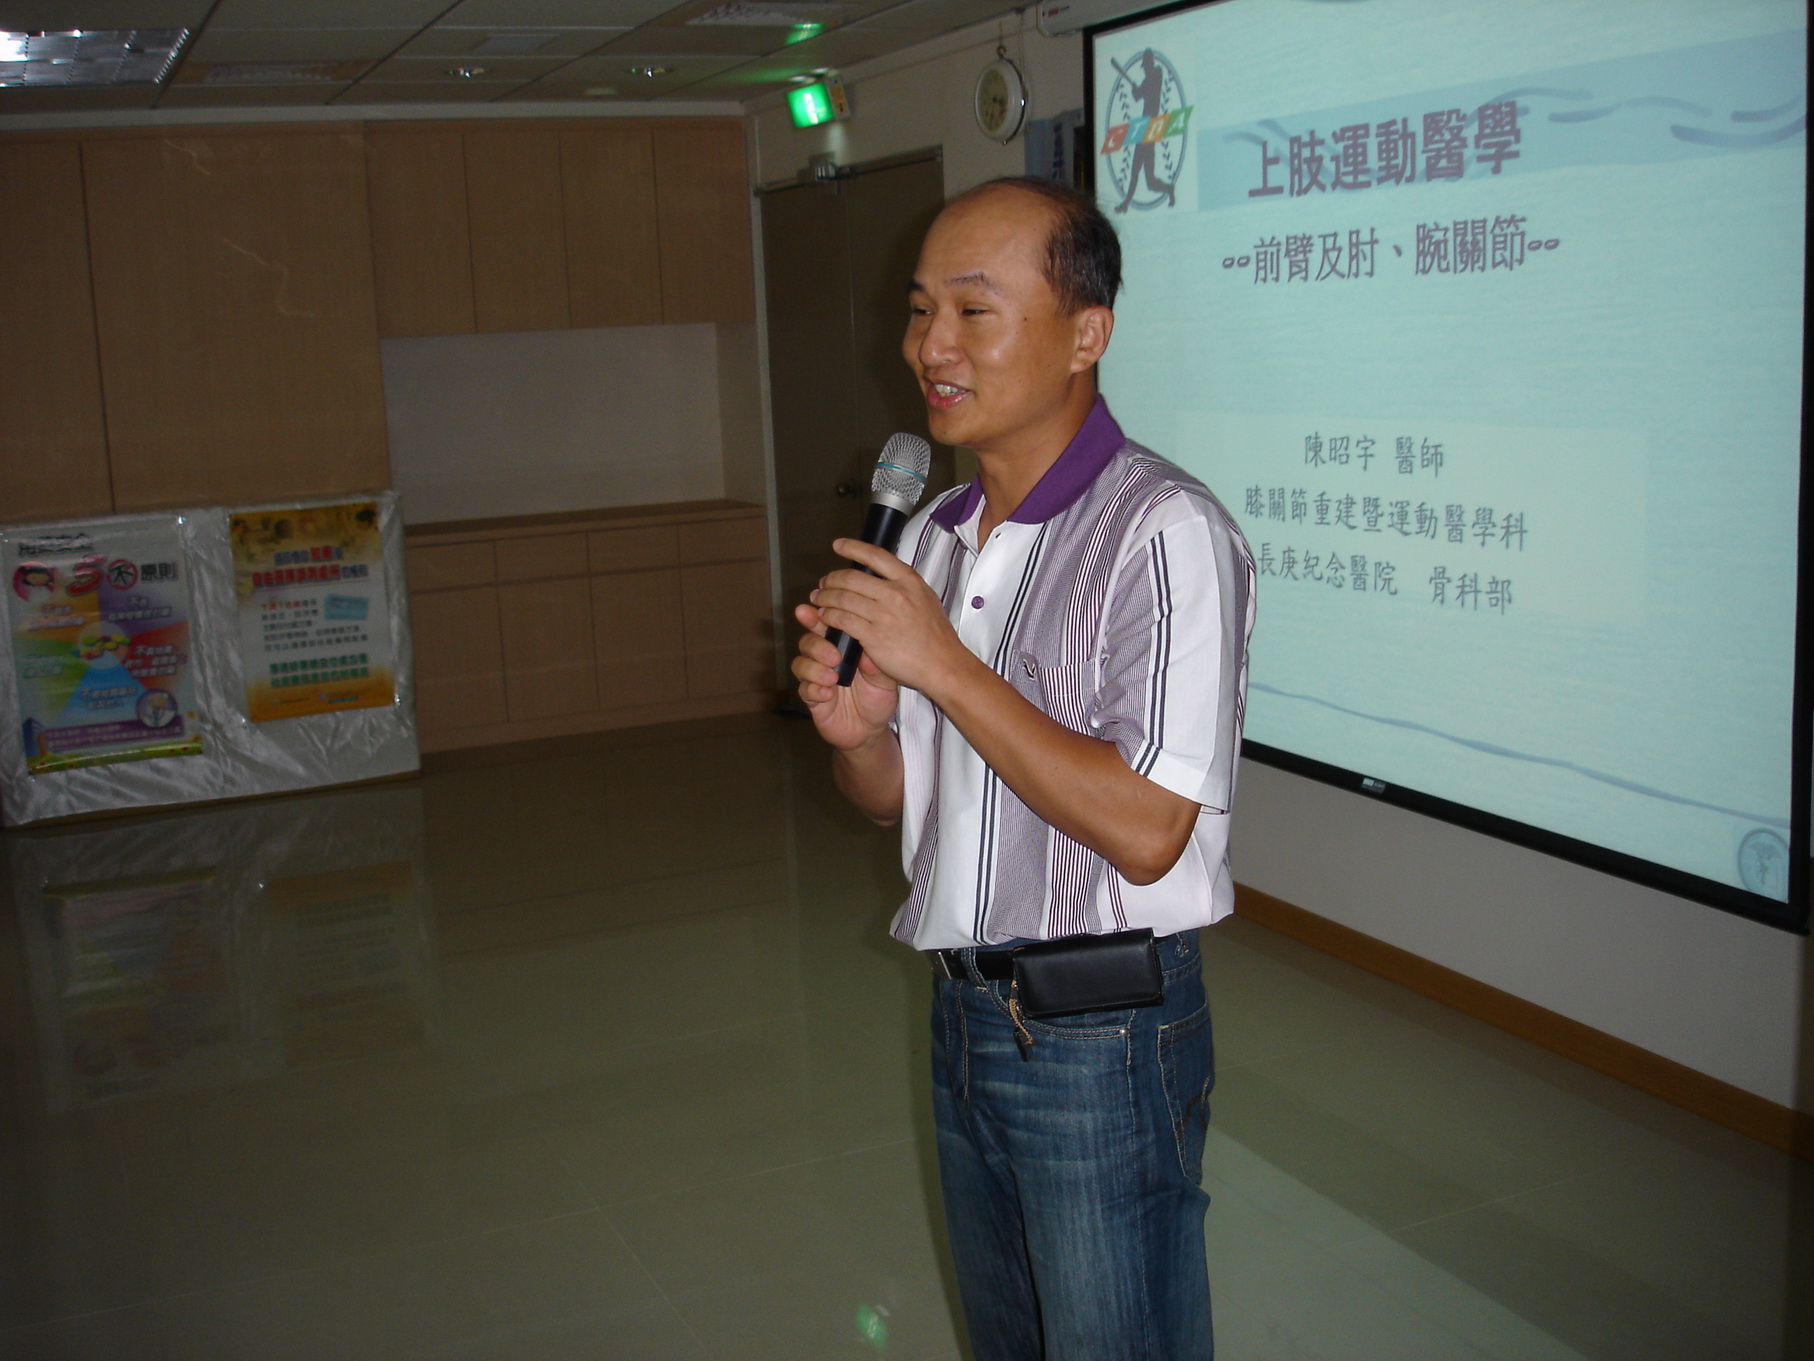 第四節由林口長庚醫院骨科主治醫師陳昭宇演講「上肢運動醫學」議題